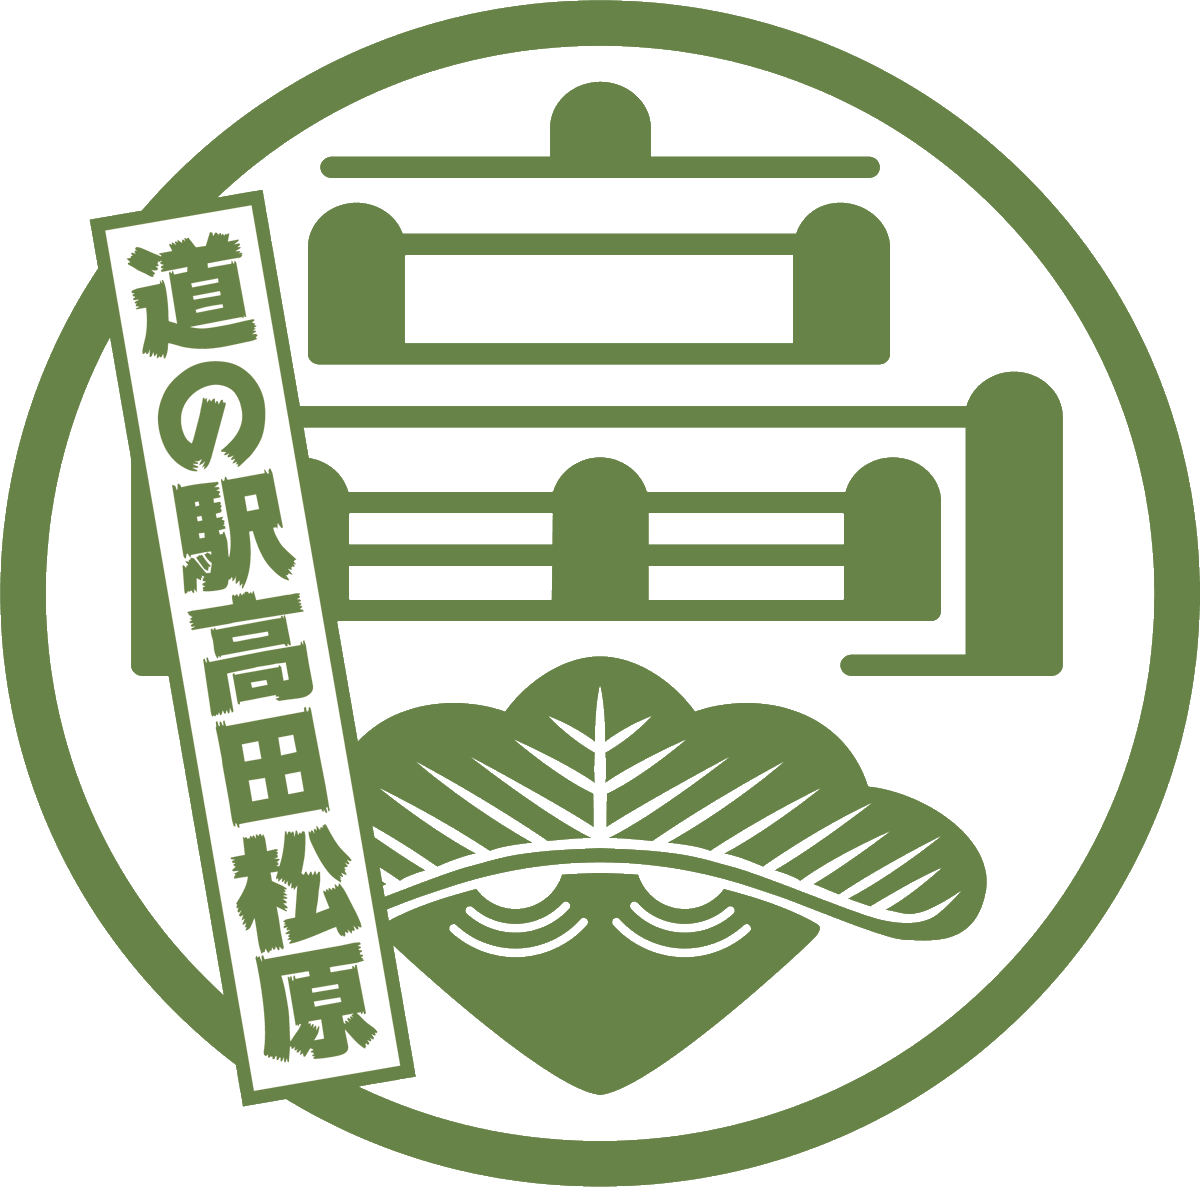 道 の 駅 高 田 松 原 Twitterissa 少し前ですが Jr東日本の 駅のスタンプ が 家紋風にデザイン刷新されるというニュースがありました T Co Cwqky それに倣って道の駅高田松原の家紋風ロゴをデザインしてみました プロフのアイコンとして使い